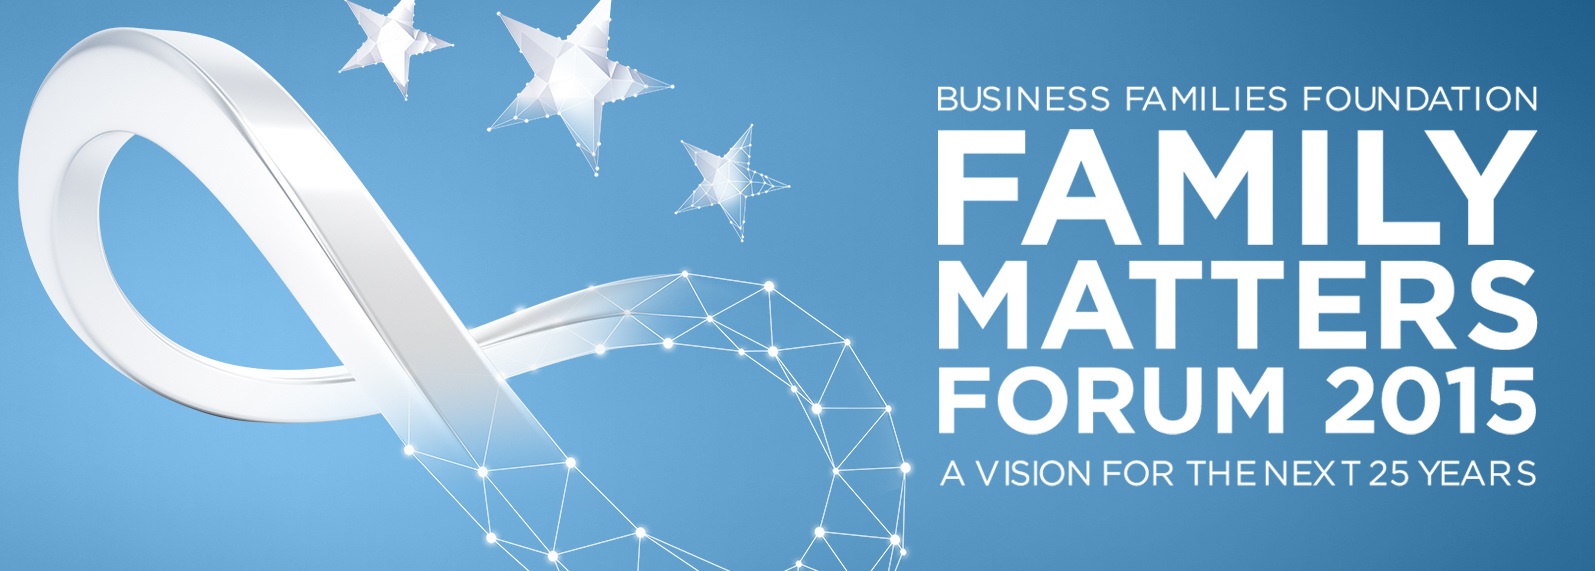 La Fondation des familles en affaires organise le Family Matters Forum 2015 à Miami